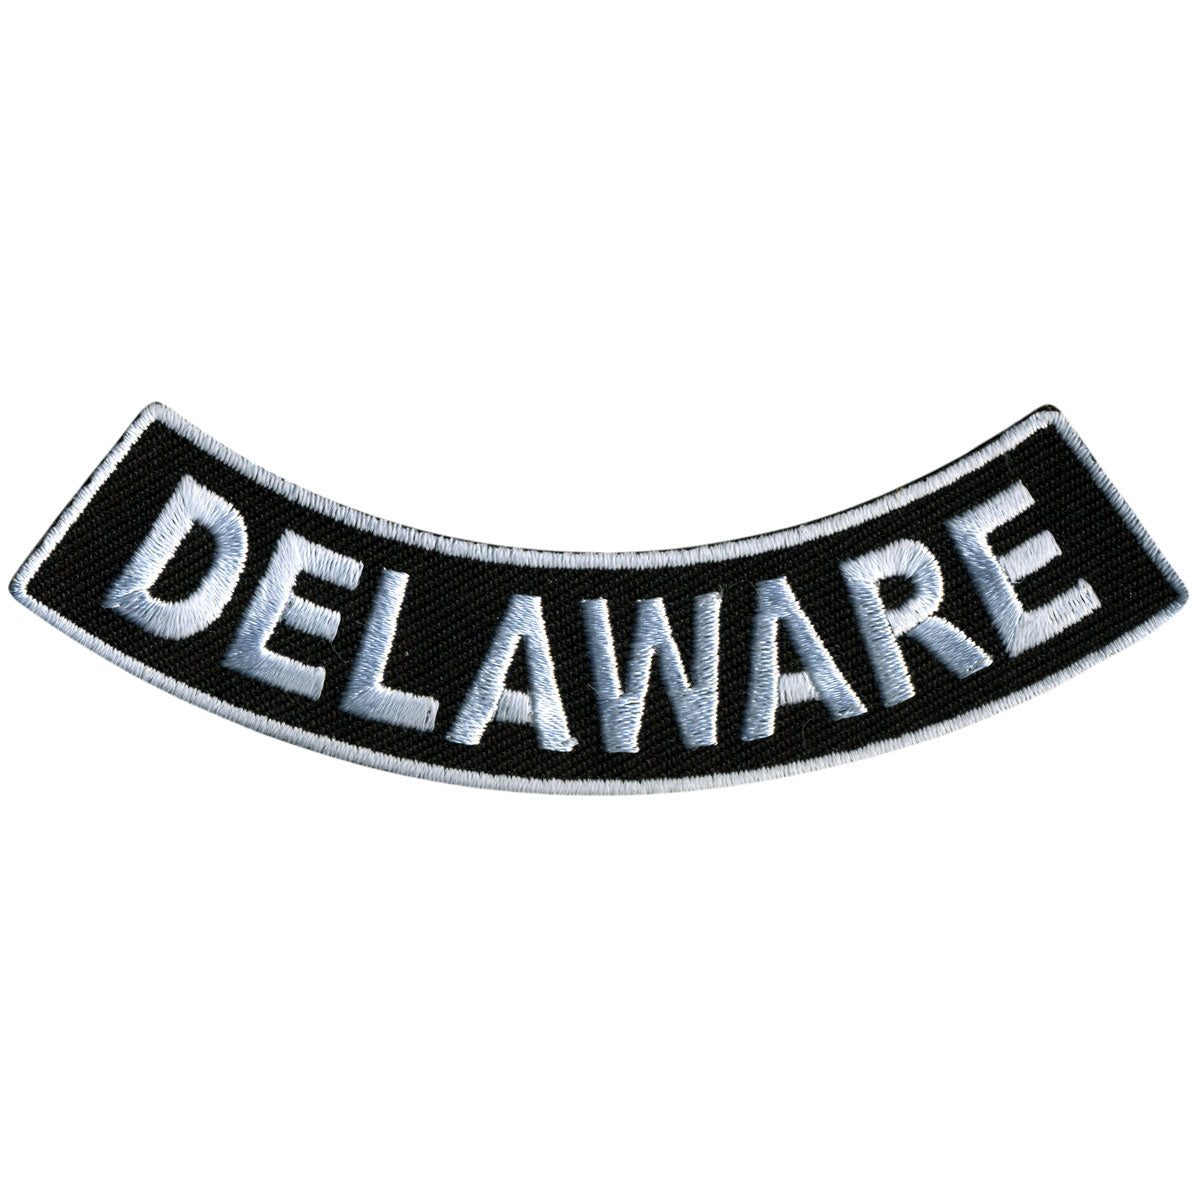 Hot Leathers Delaware 4” X 1” Bottom Rocker Patch